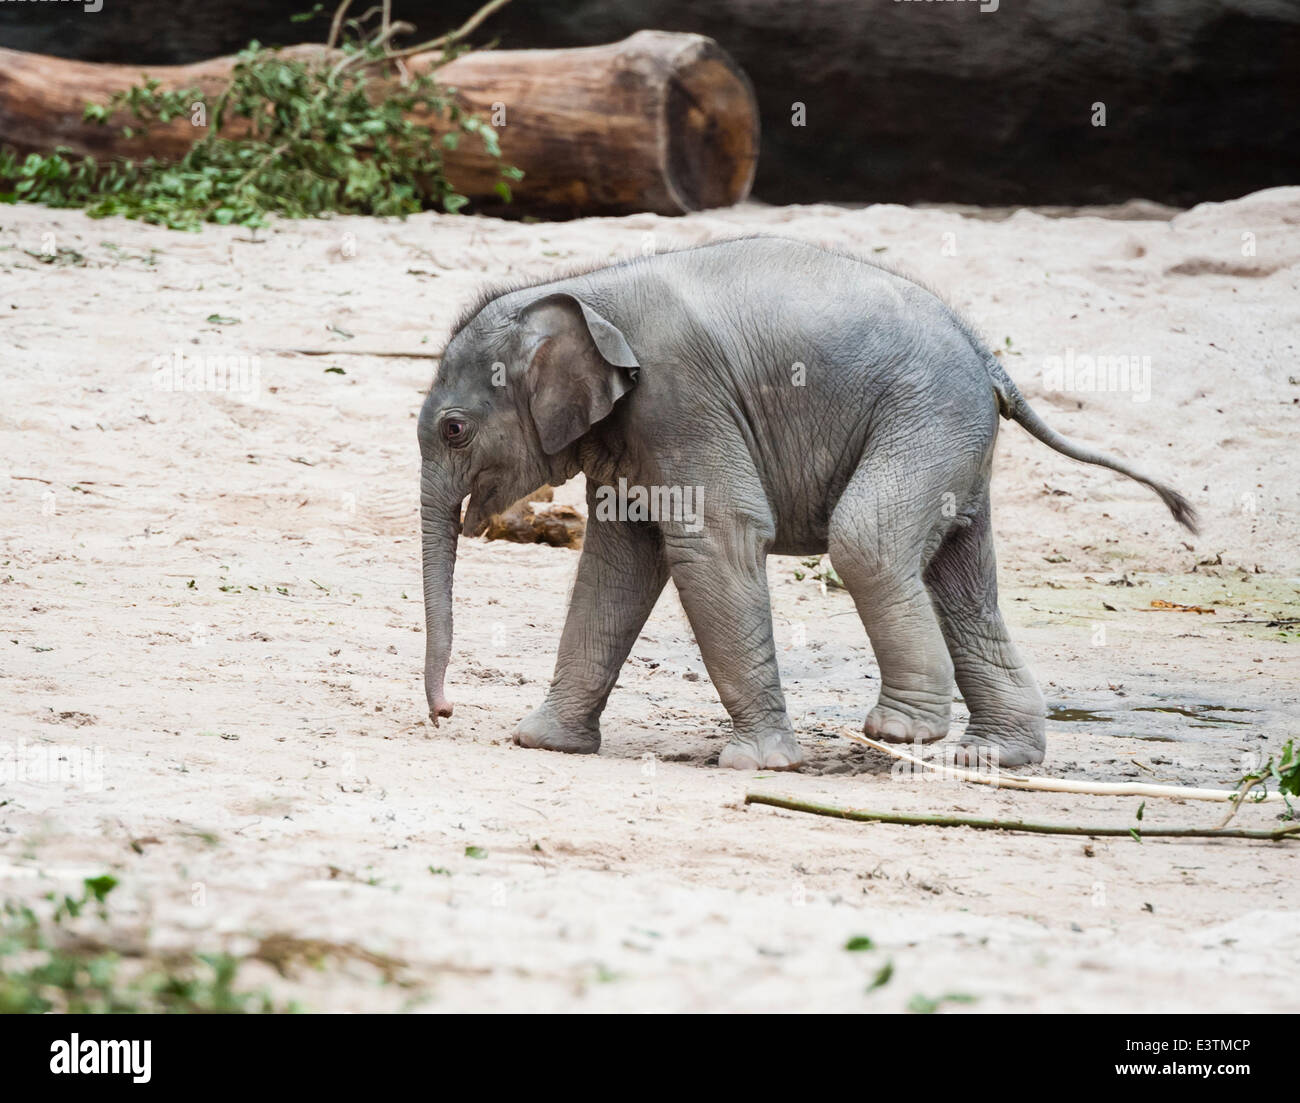 Zurigo, Svizzera. Il 28 giugno, 2014. Passo dopo passo, il 11-giorno vecchio ancora senza nome elephant bambina che nasce a Zurigo il 17 giugno 2014, è exloring la sua casa allo zoo di Zurigo. Credito: Erik Tham/Alamy Live News Foto Stock